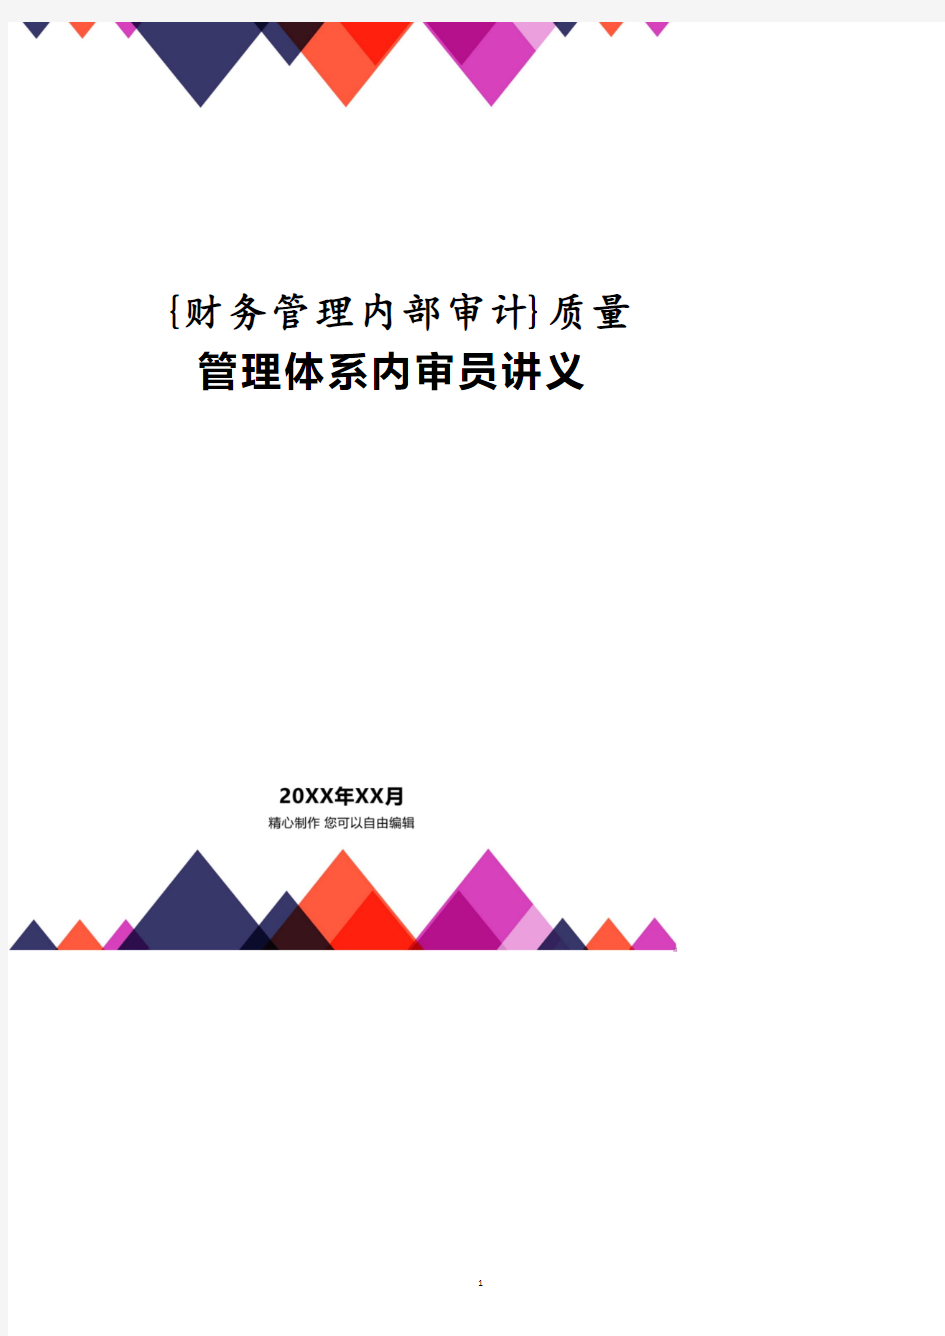 质量管理体系内审员讲义.pdf